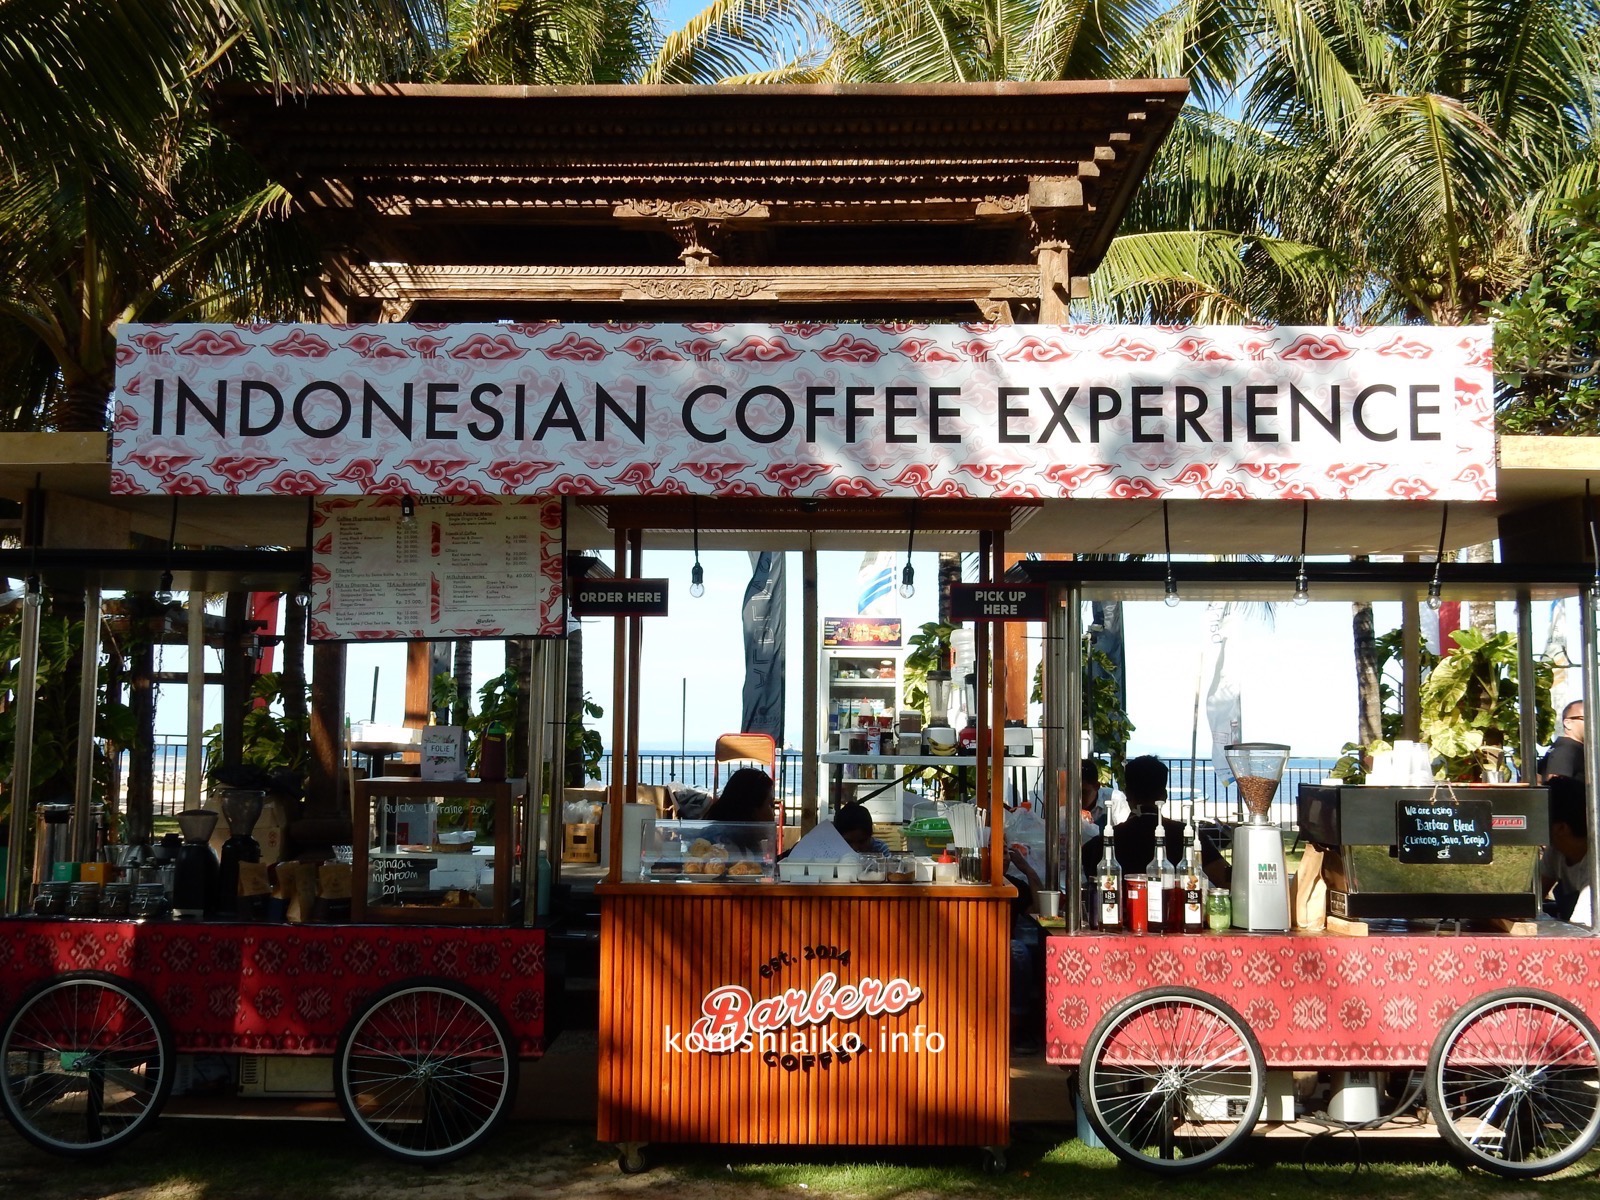 インドネシア産のコーヒーが飲めるカフェ